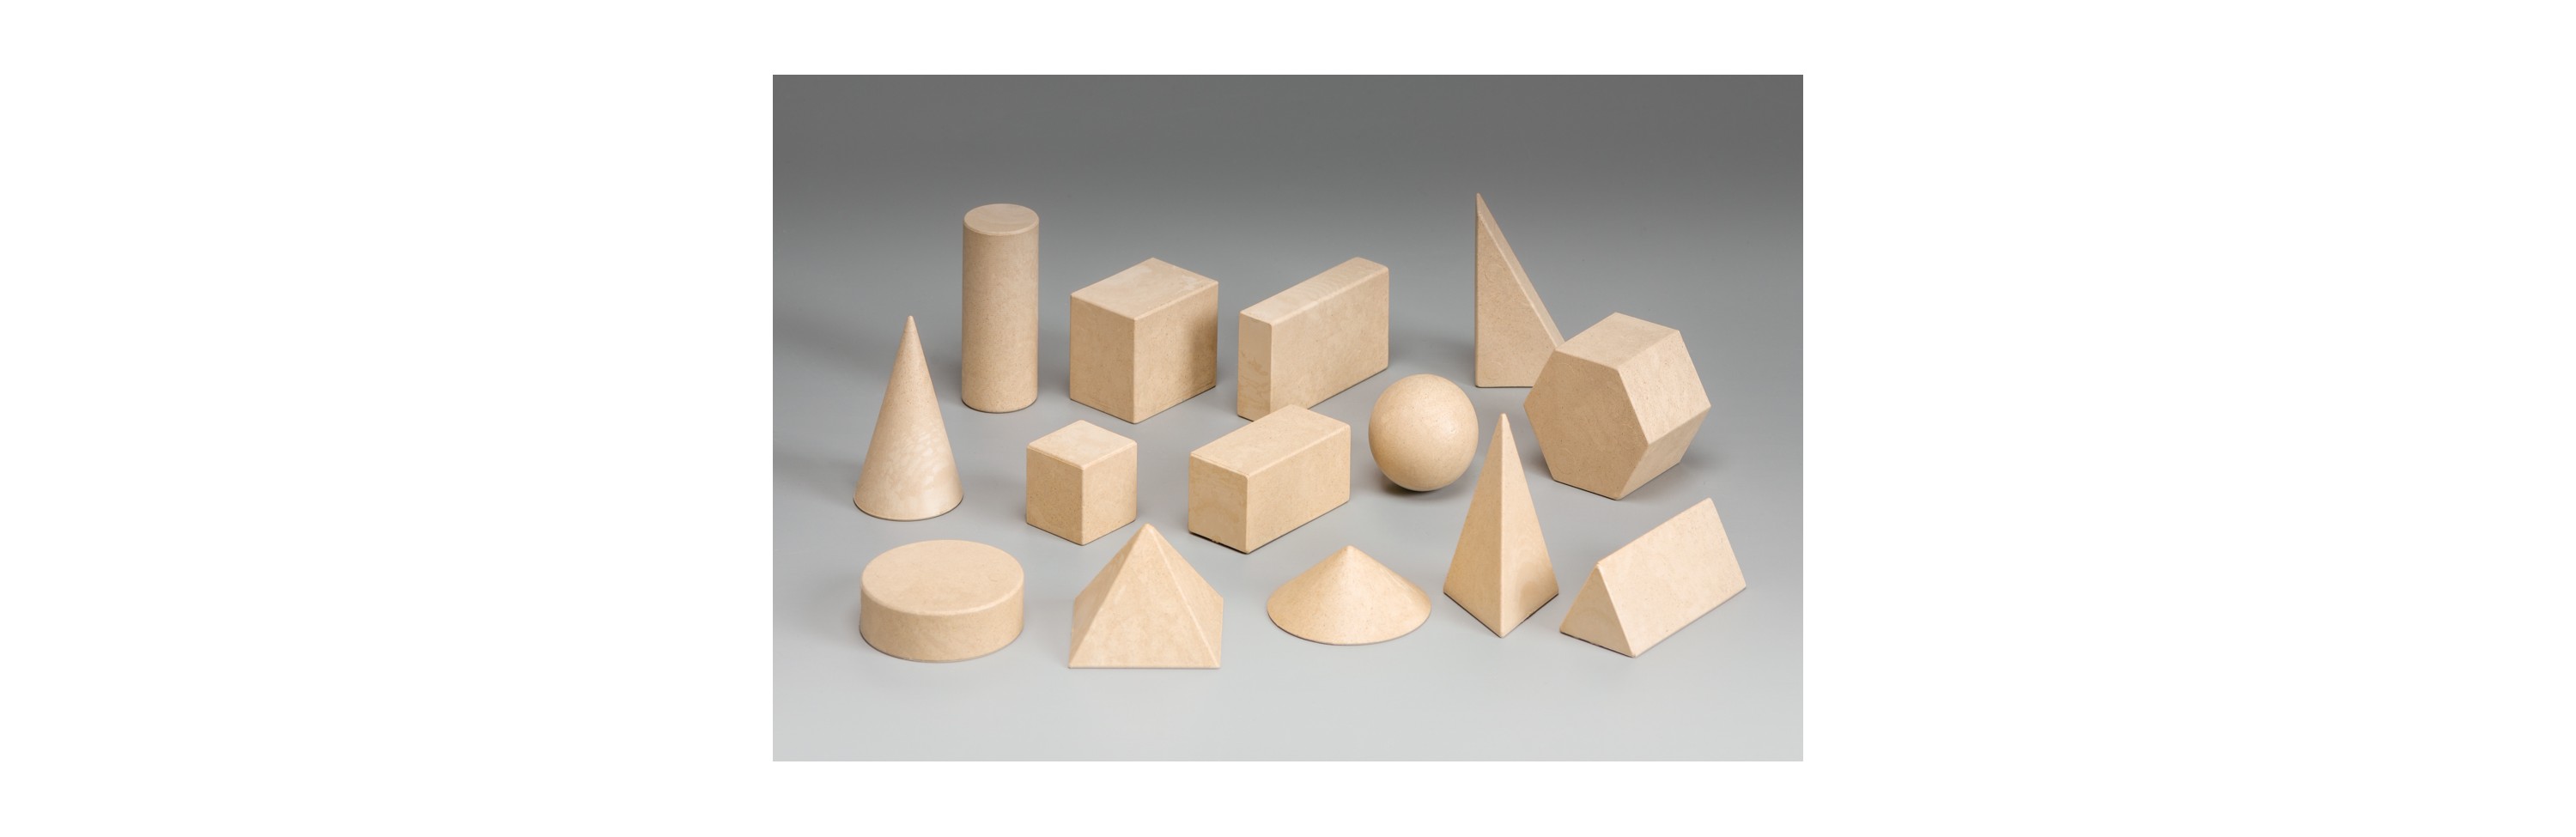 Wissner® aktiv lernen - Geometriekörpersatz (14 Stück) RE-Wood®